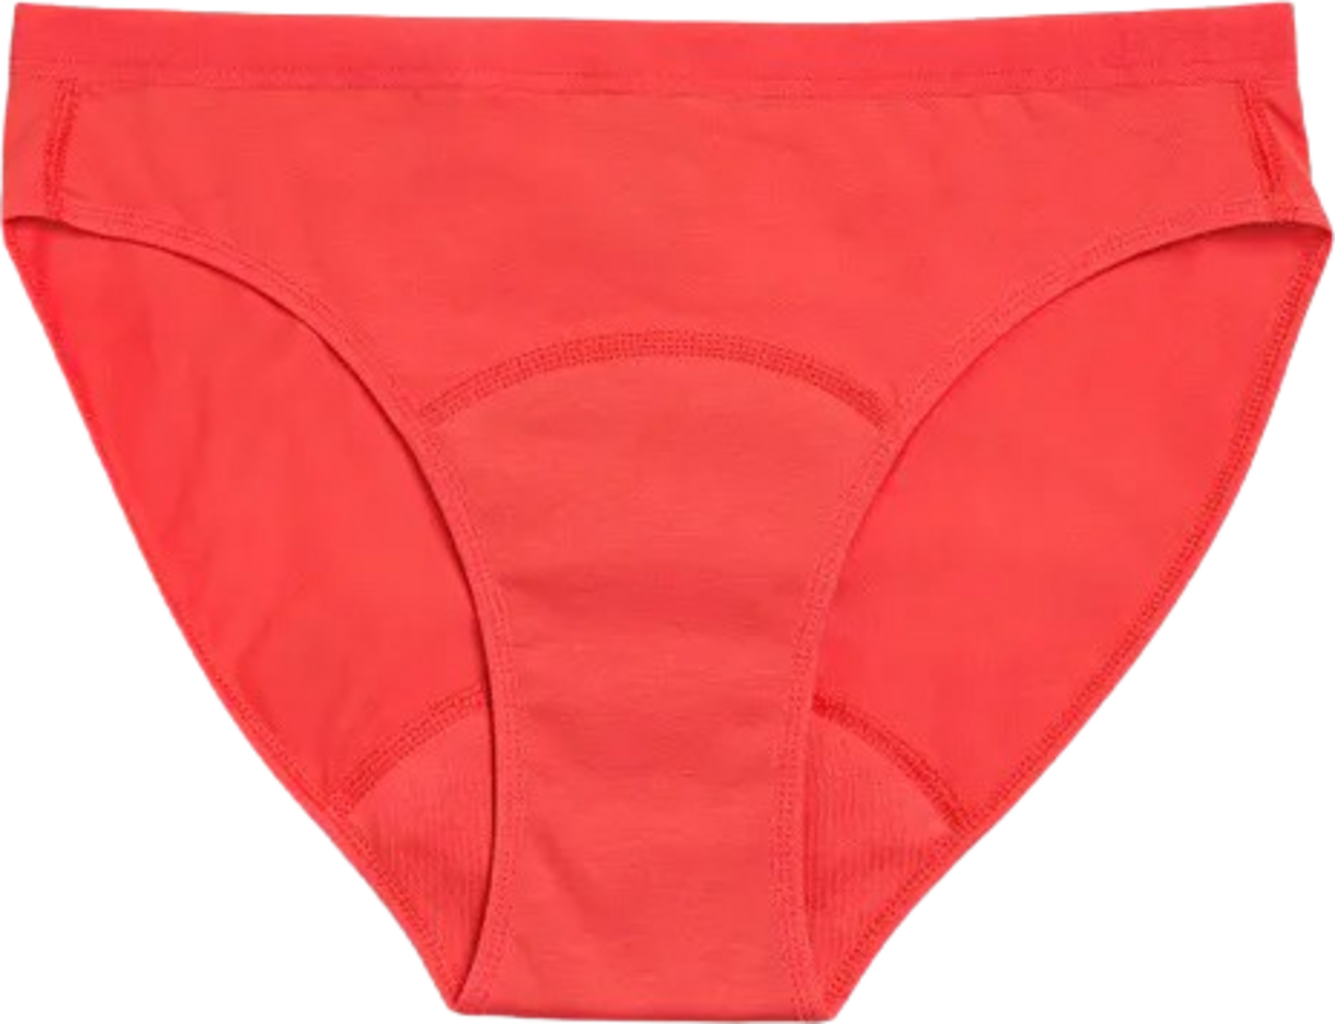 Imse Bright Red Teen Bikini Period Underwear - Medium Flow - Ecco Verde  Online Shop